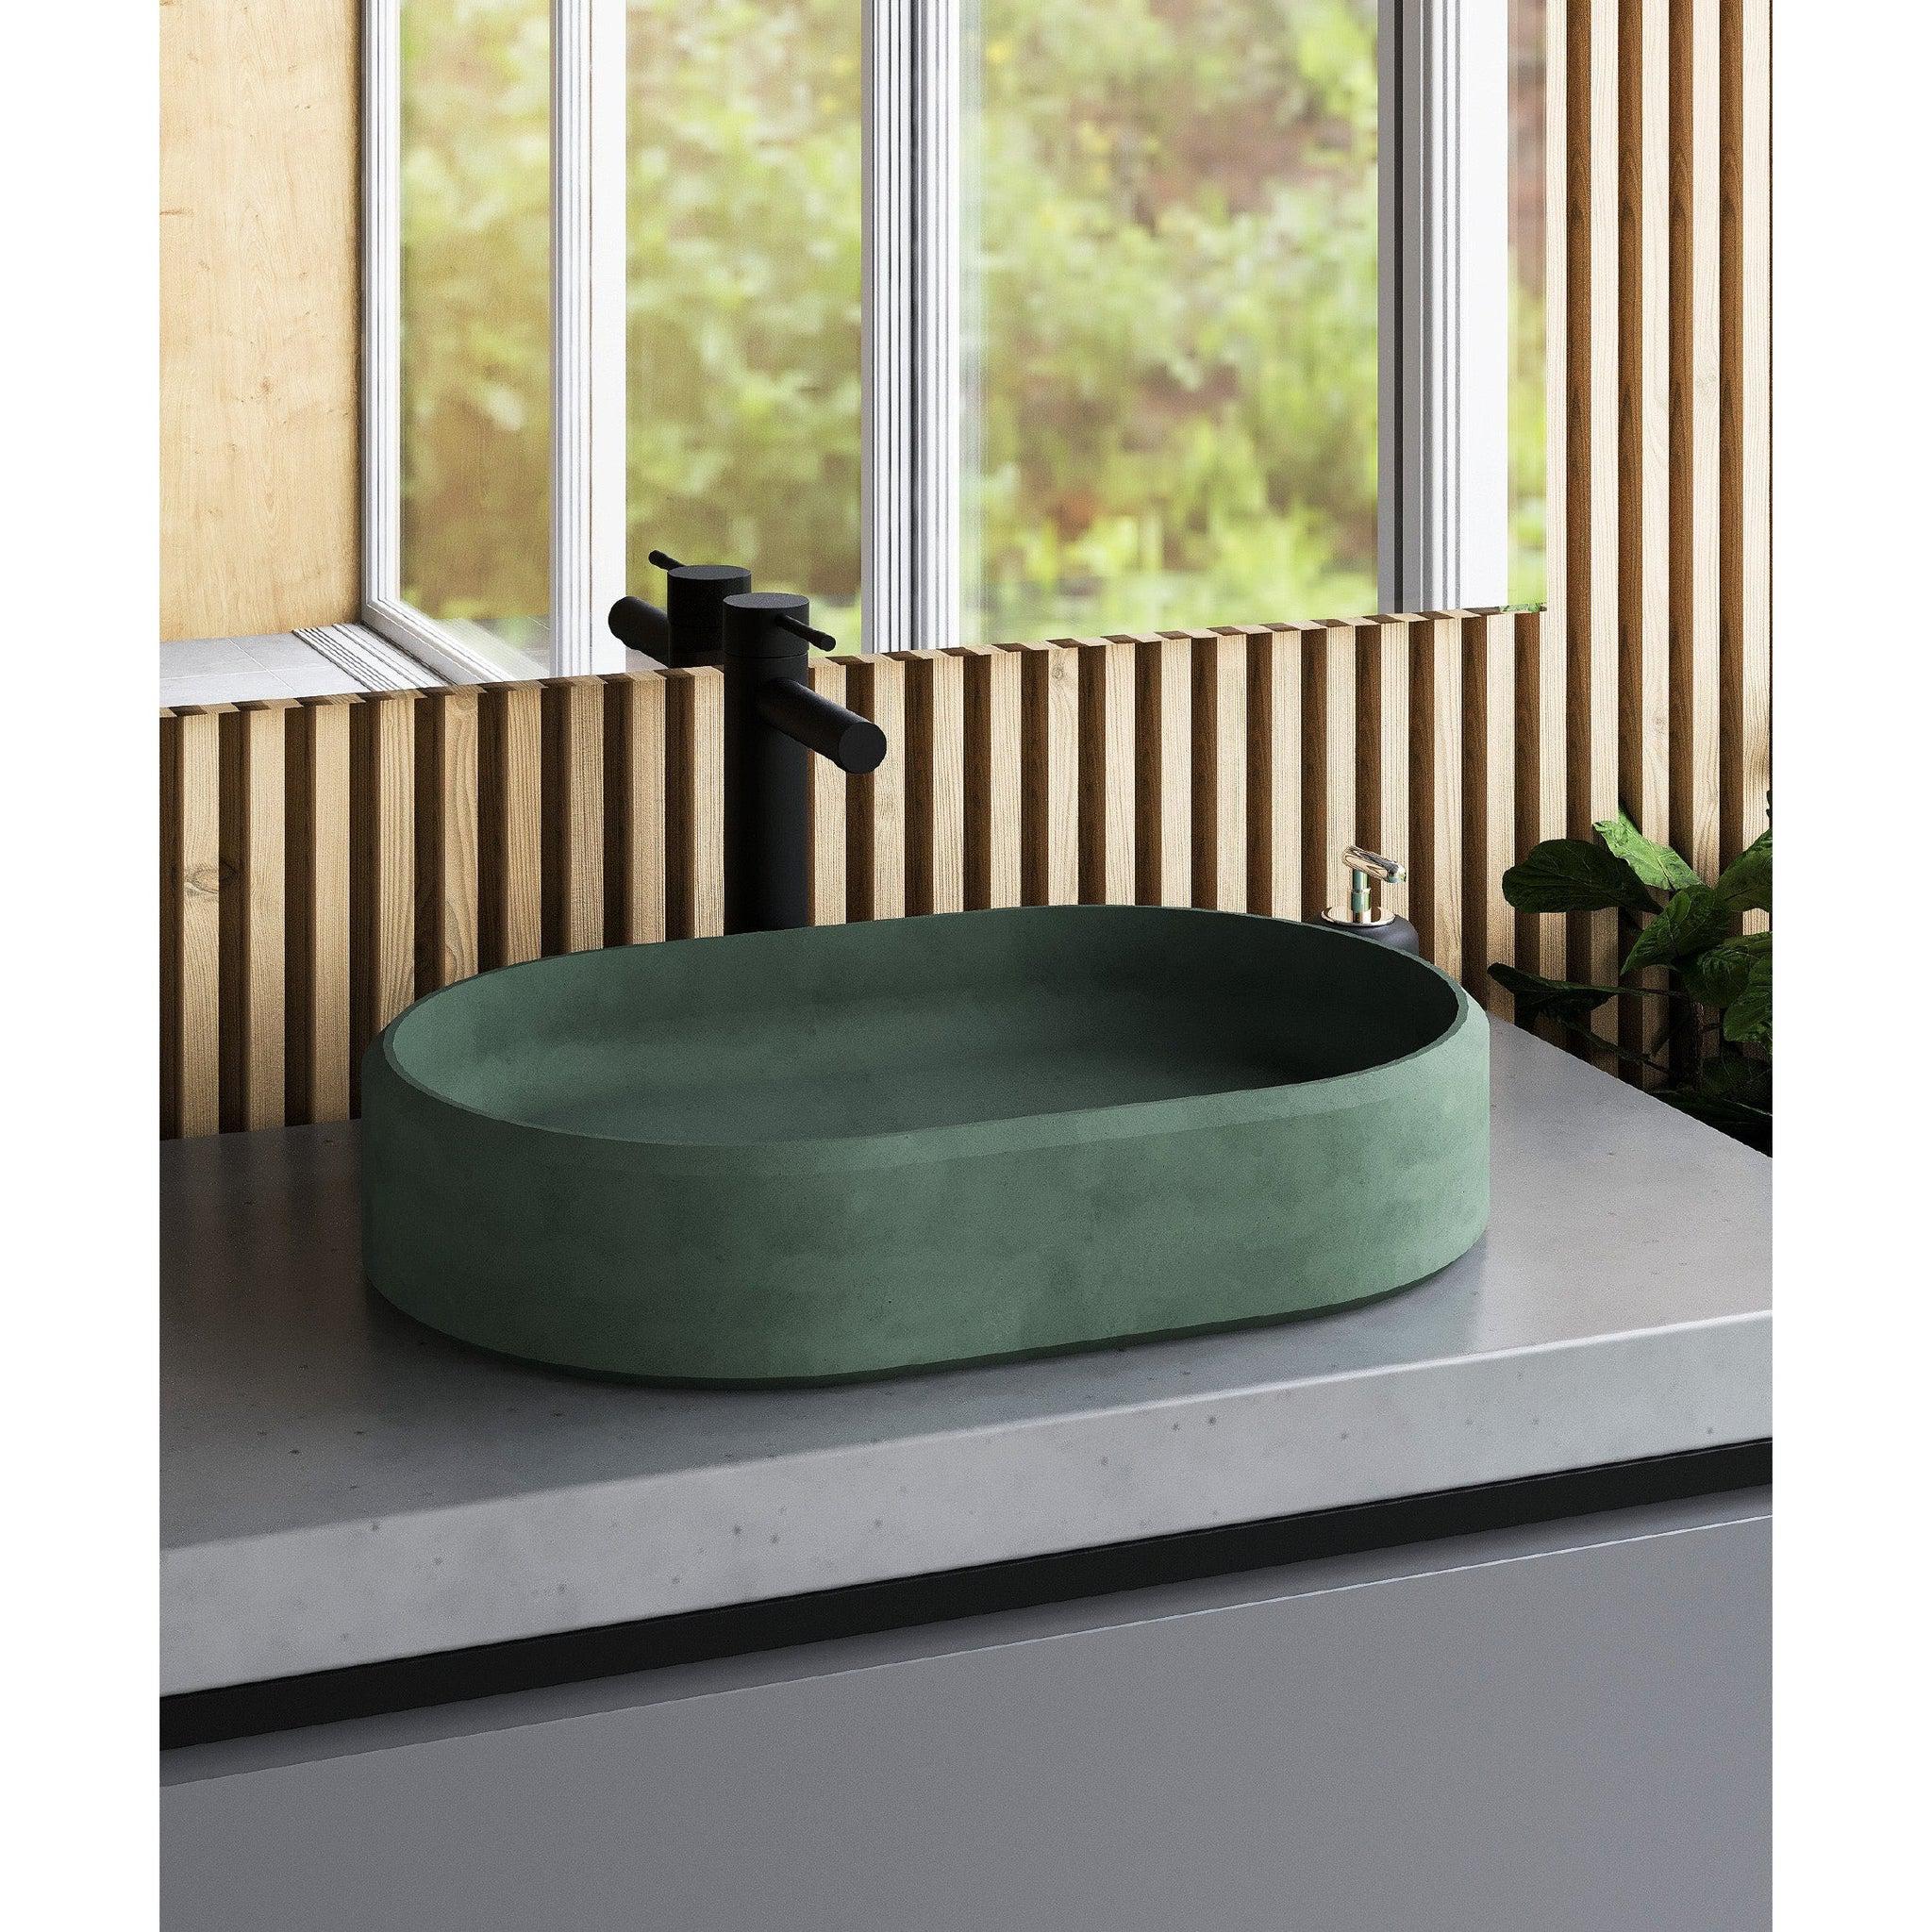 Konkretus, Konkretus Ubud02 22" Amazonic Green Top Mount Oval Vessel Concrete Bathroom Sink